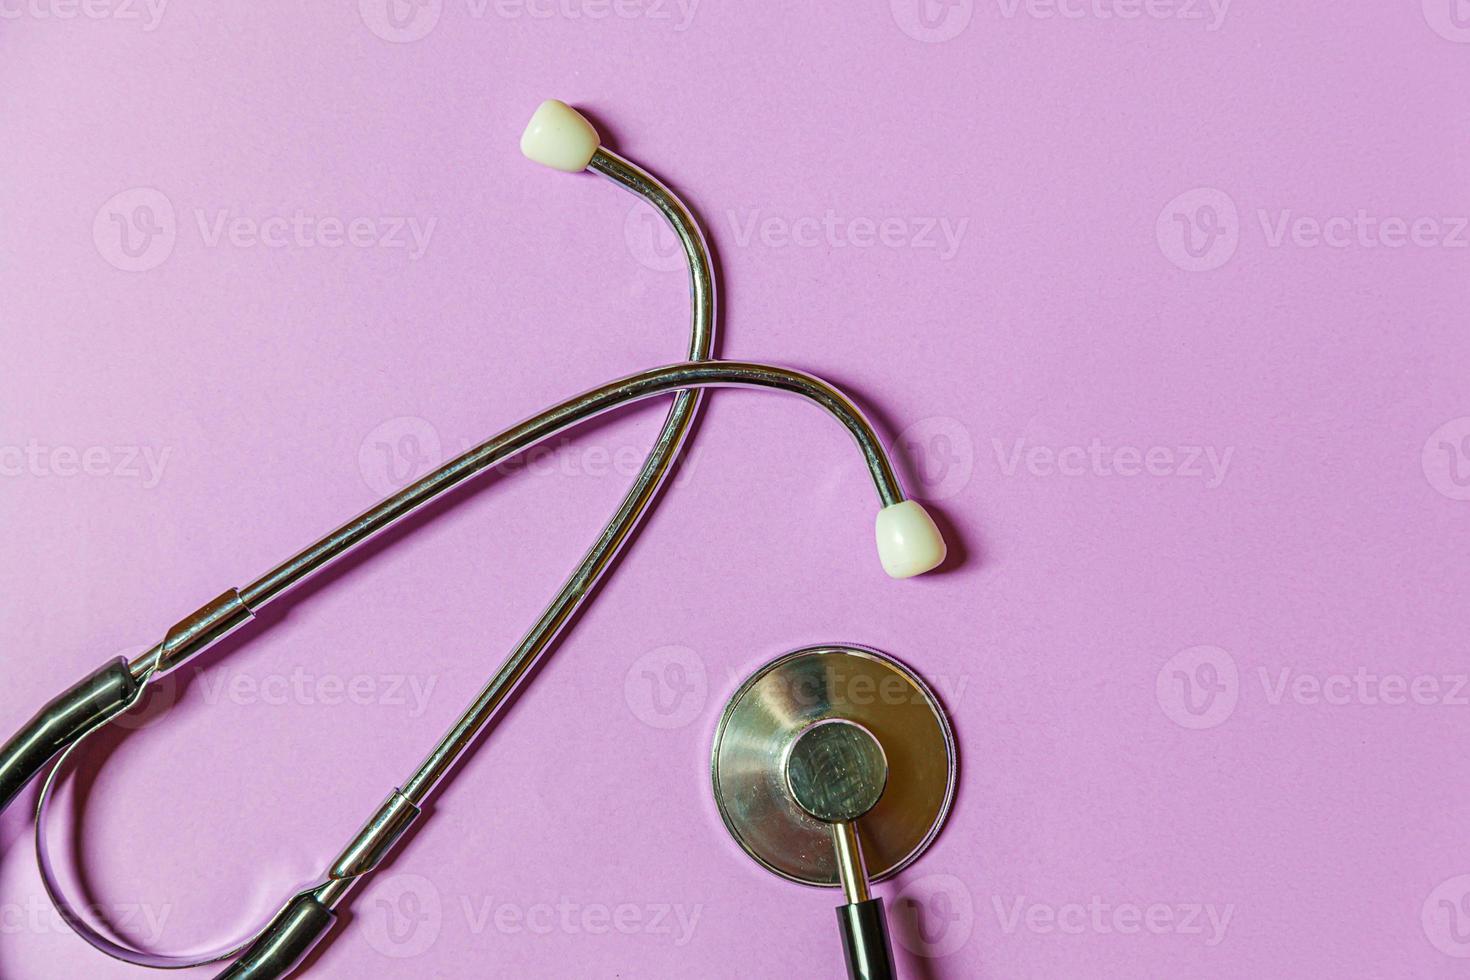 einfach minimales design mit medizingeräten stethoskop oder phonendoskop isoliert auf trendigem pastellviolettem hintergrund. Instrumentengerät für Arzt. gesundheitslebensversicherungskonzept. foto